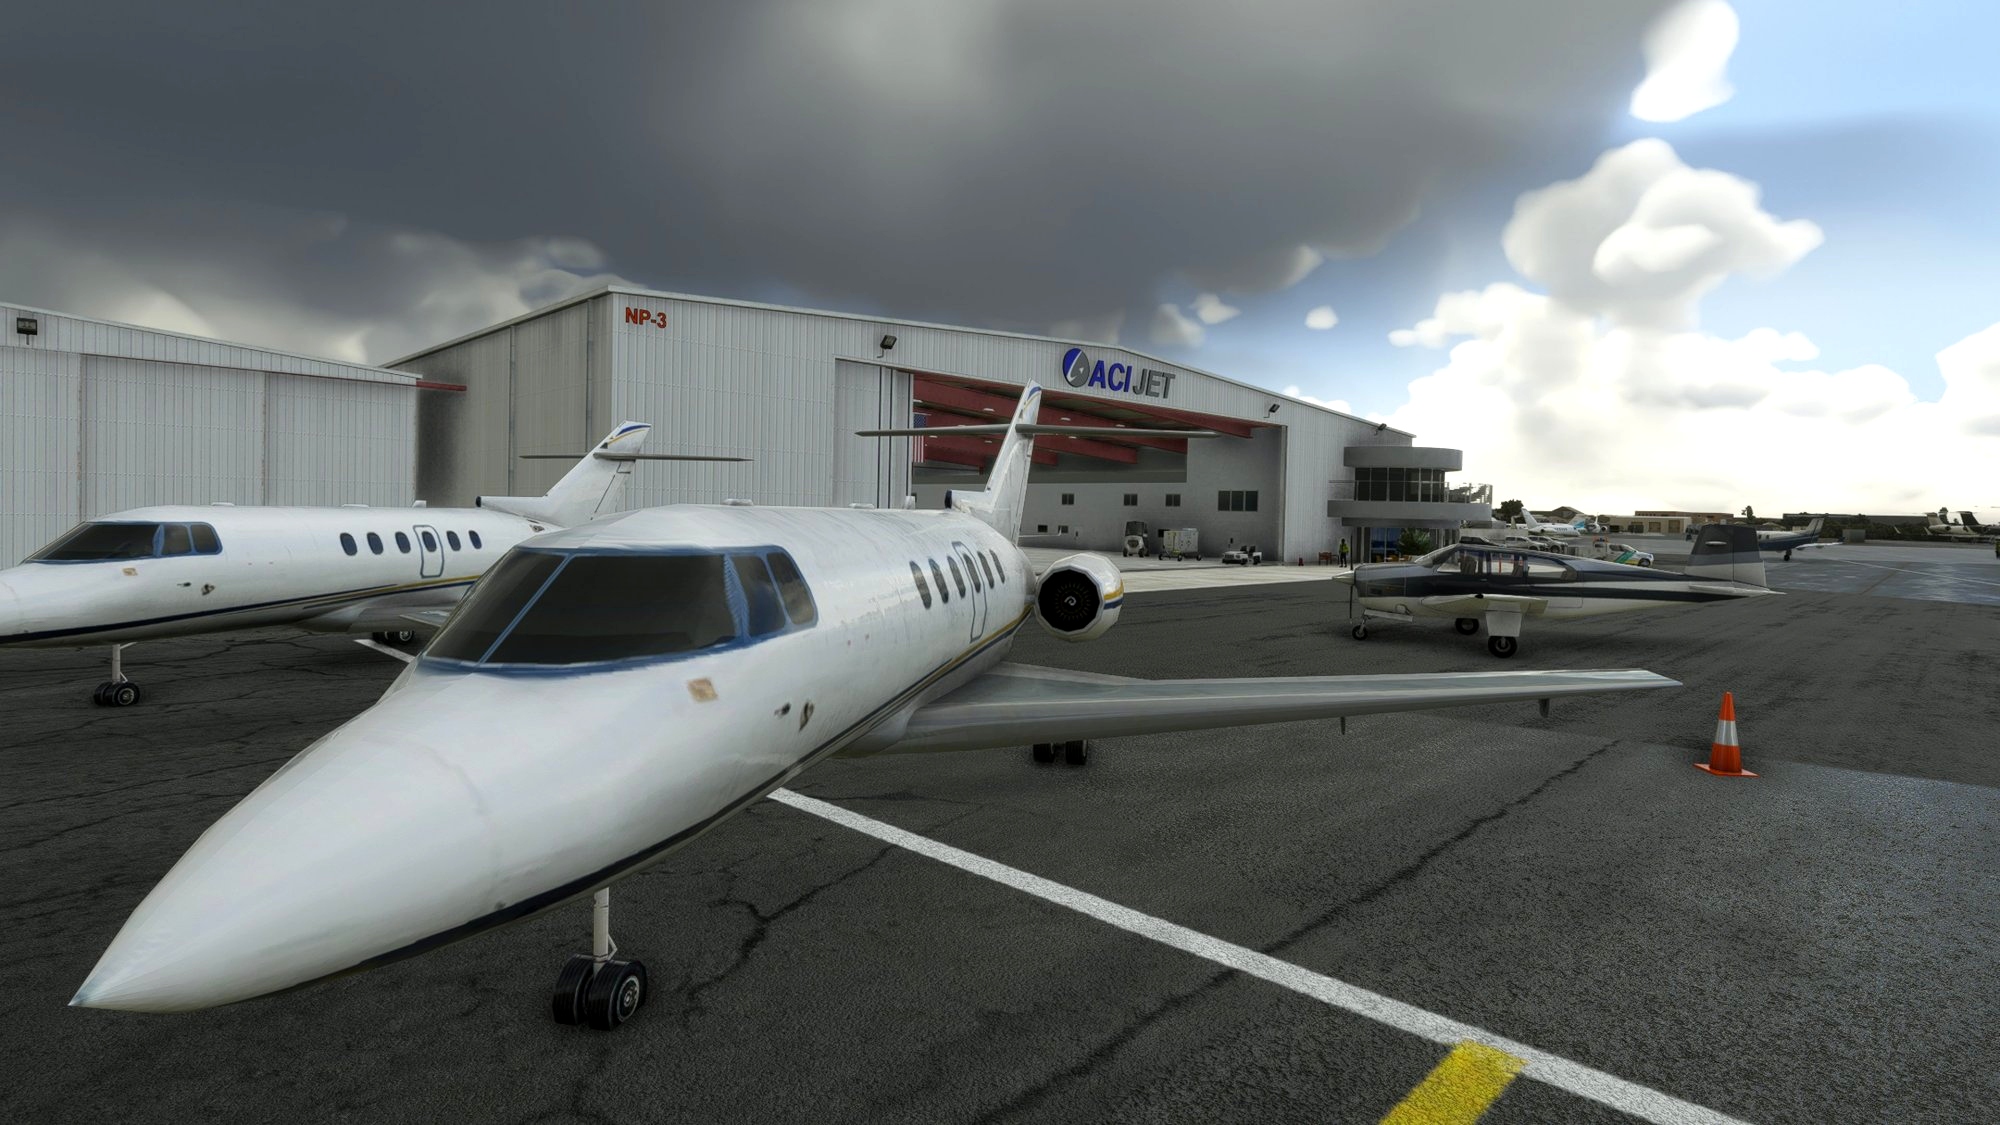 John Wayne - Santa Ana Airport (KSNA) Microsoft Flight Simulator